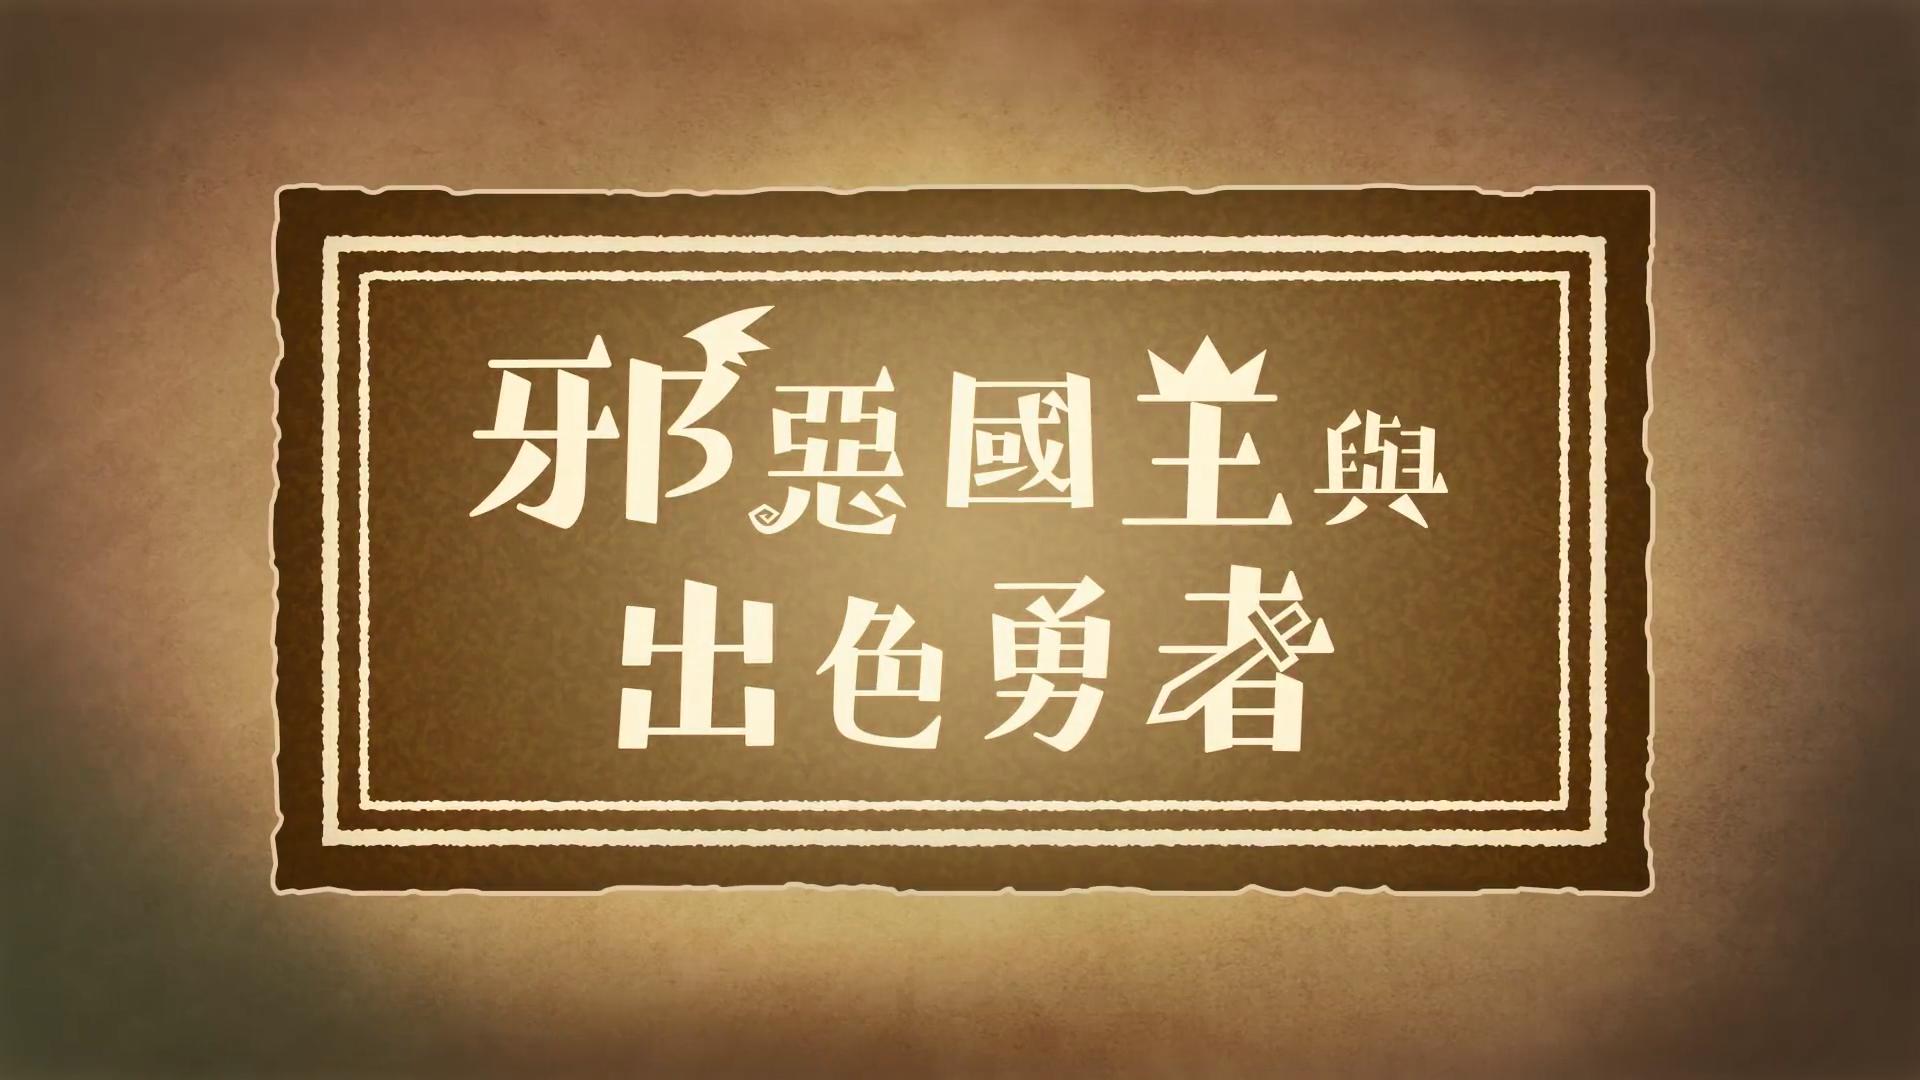 《邪恶国王与出色勇者》中文宣传影片 9月30日发售